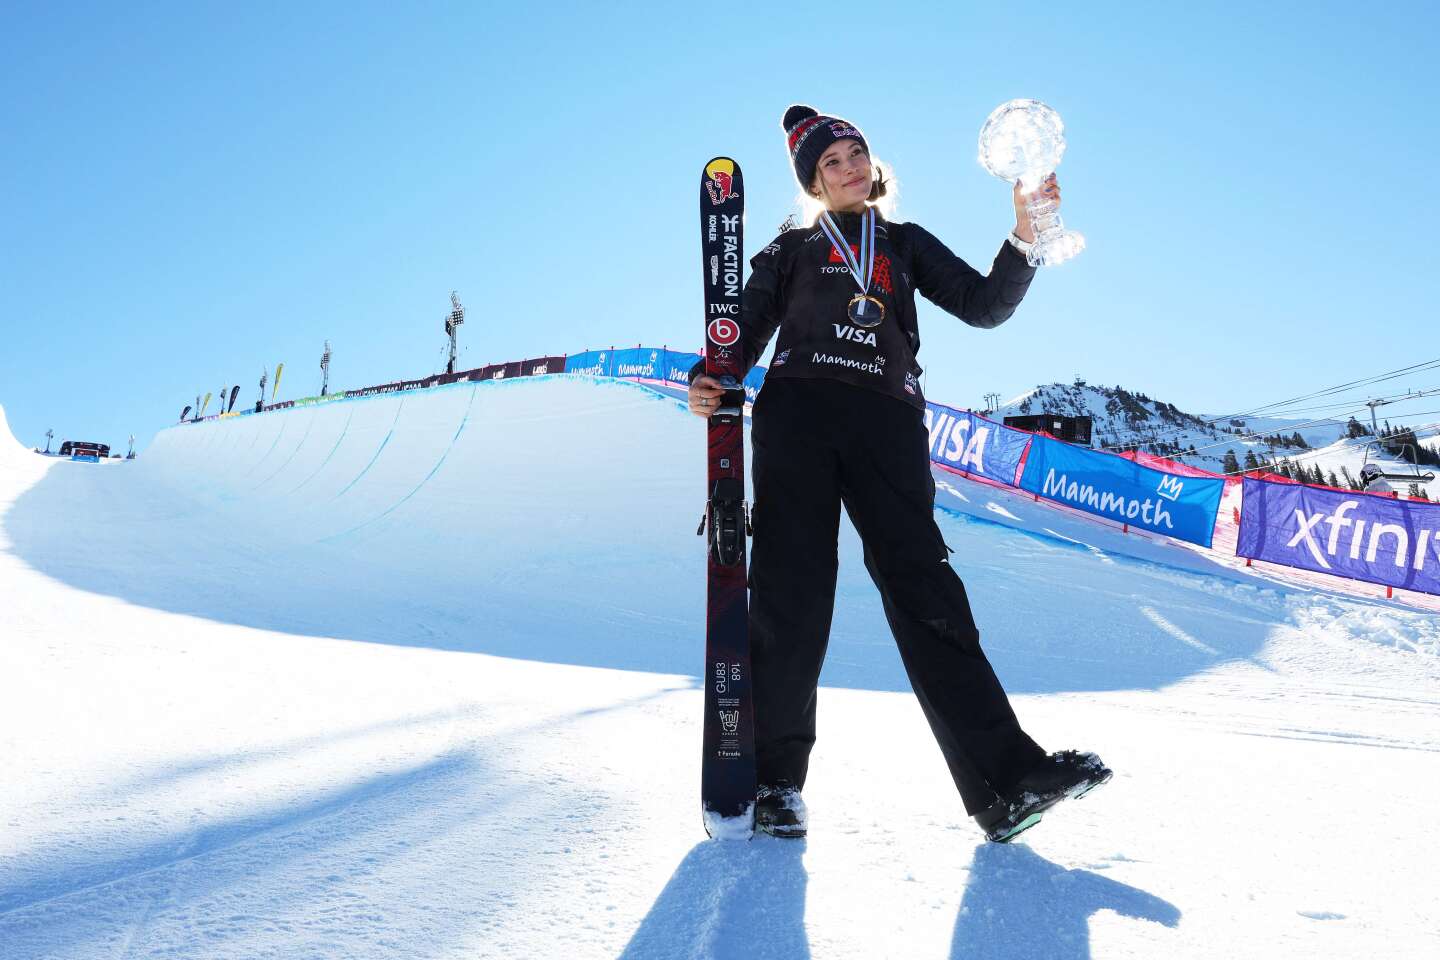 Vêtements ski femme - équipement Vêtements ski femme - Cdiscount Sport